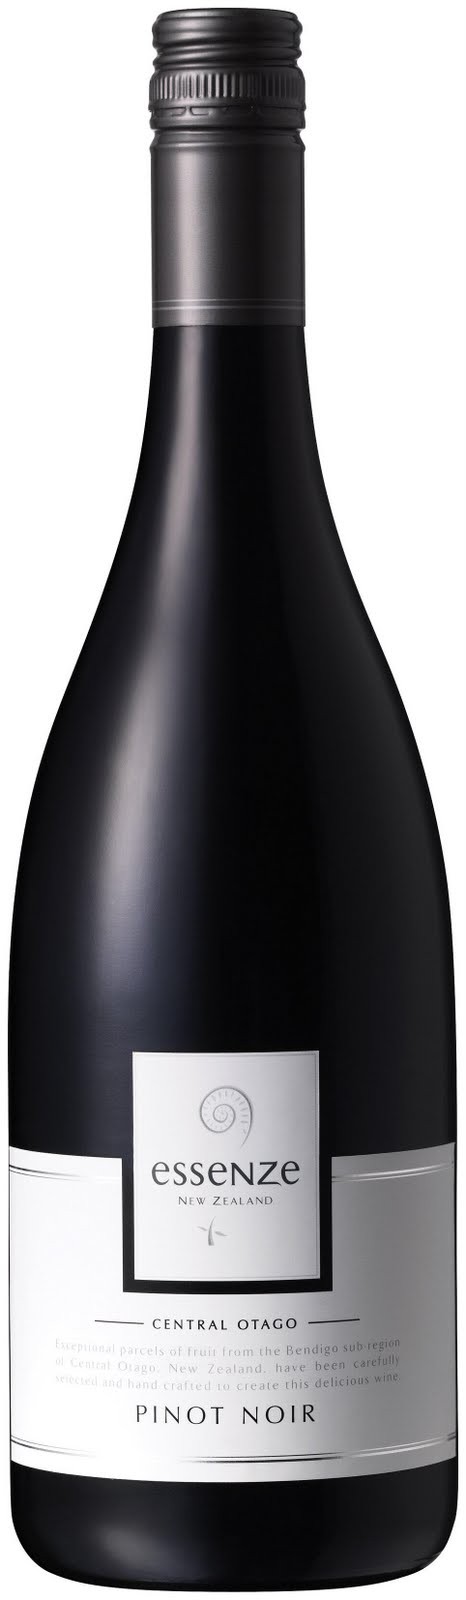 Essenze Central Otago Pinot Noir